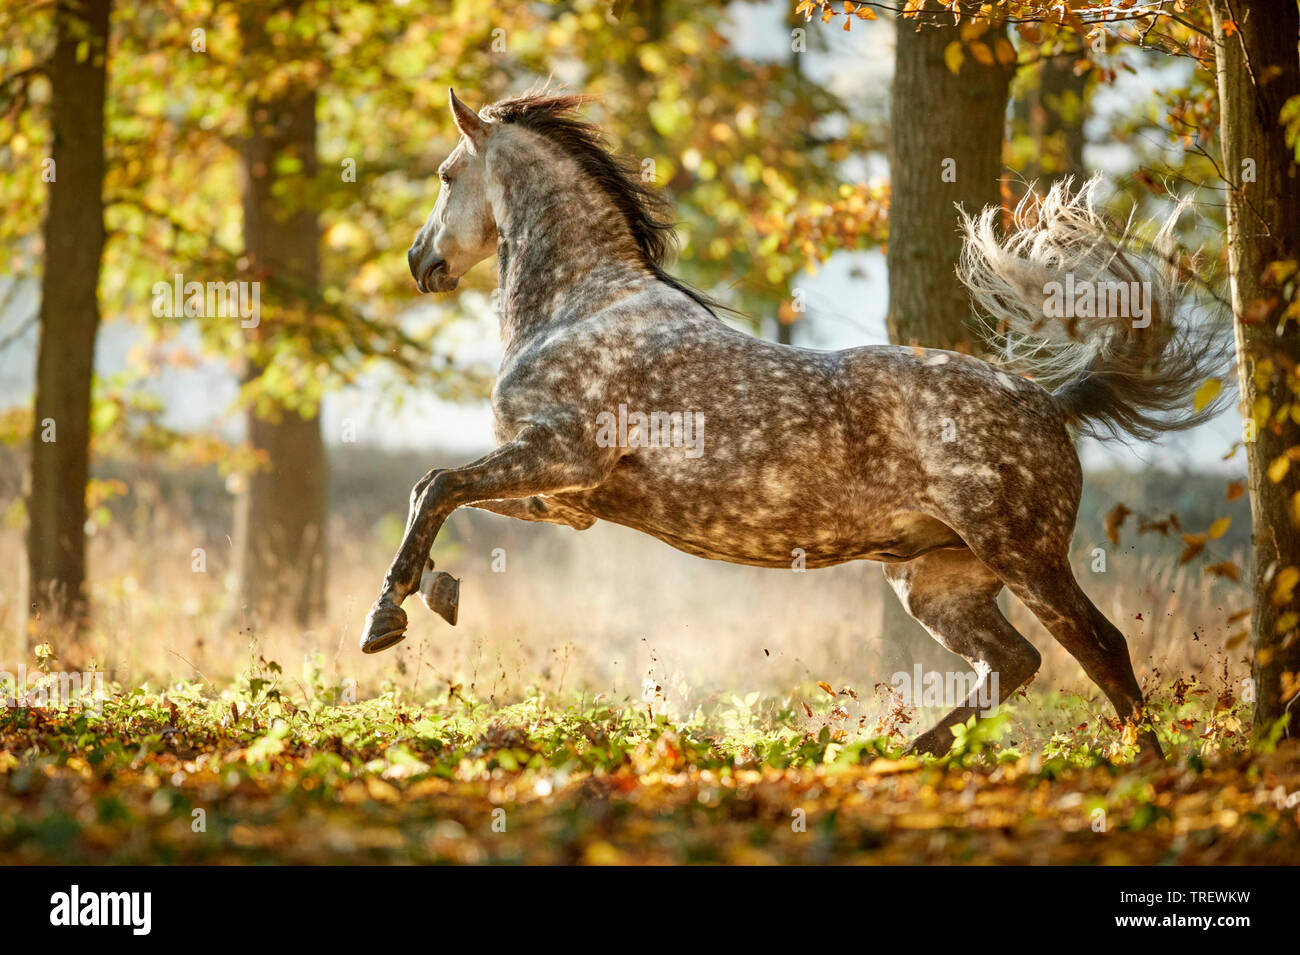 Puro Cavallo Spagnolo andaluso. Pezzata adulto grigio mostra-off in una foresta in autunno. Germania Foto Stock